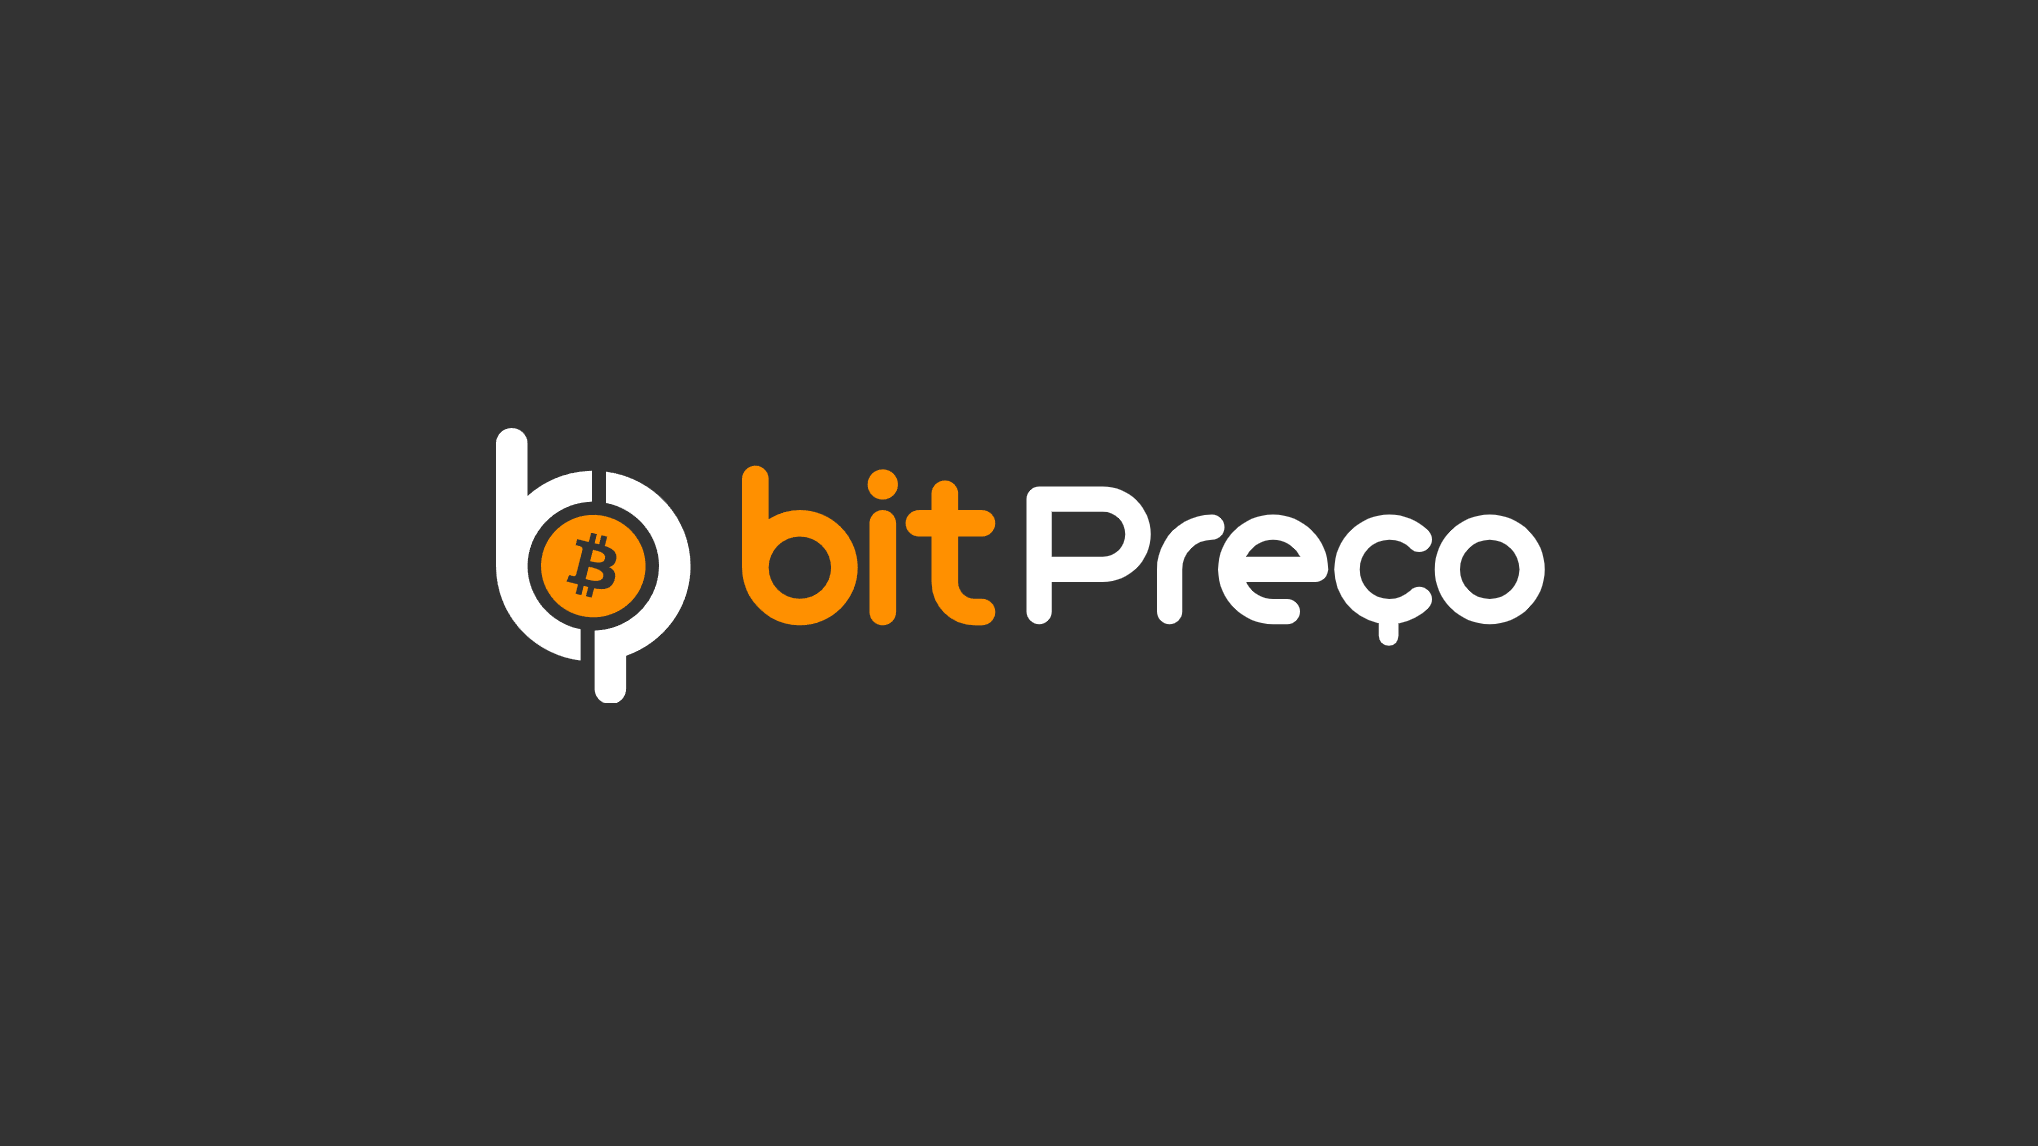 Logotipo Corretora BitPreço. Saiba como ela como funciona no artigo